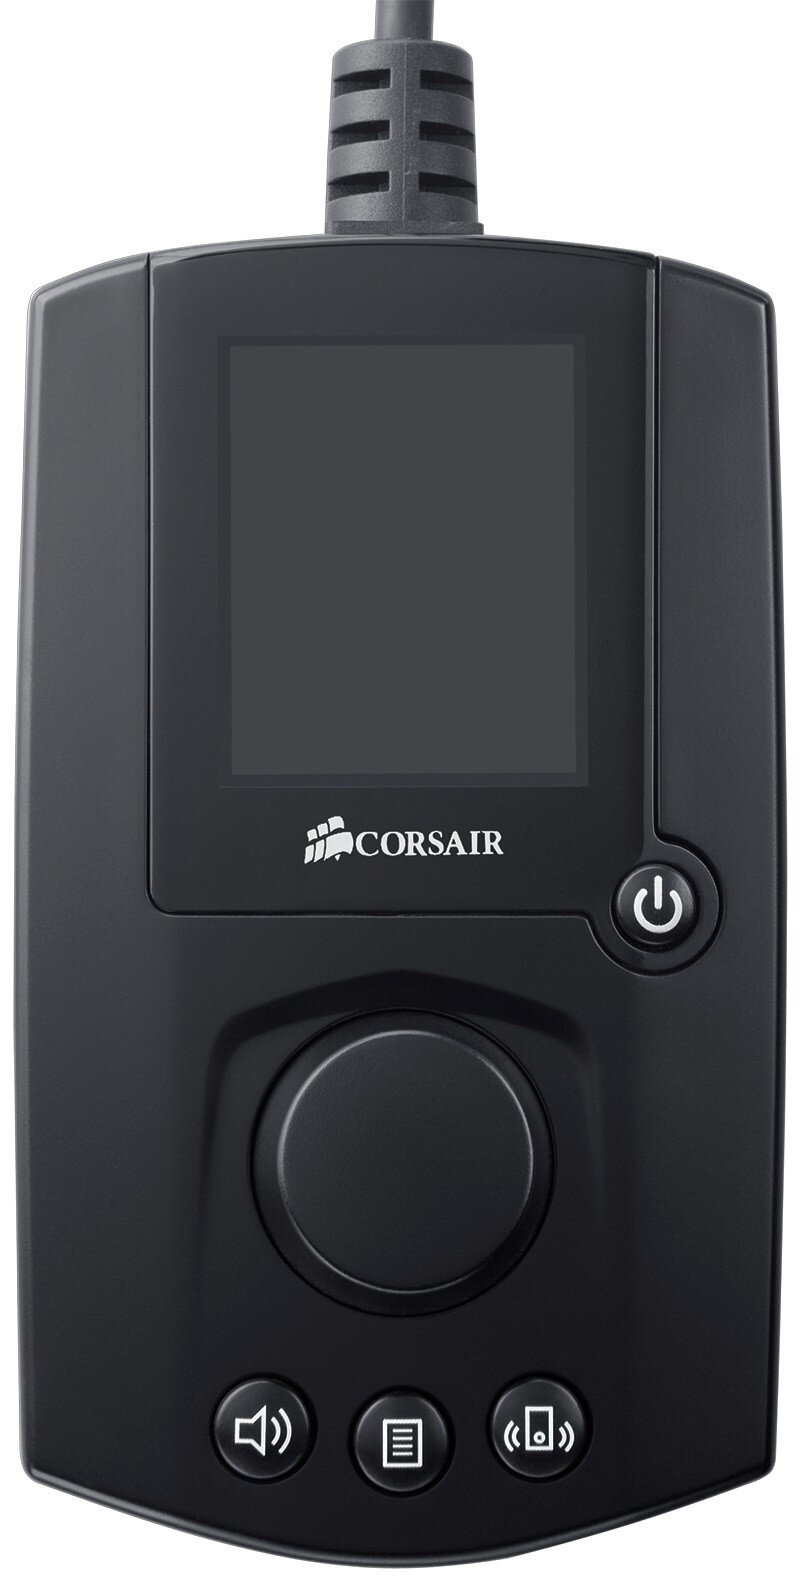 Buy Corsair Remote Control Audio online Worldwide - Tejar.com